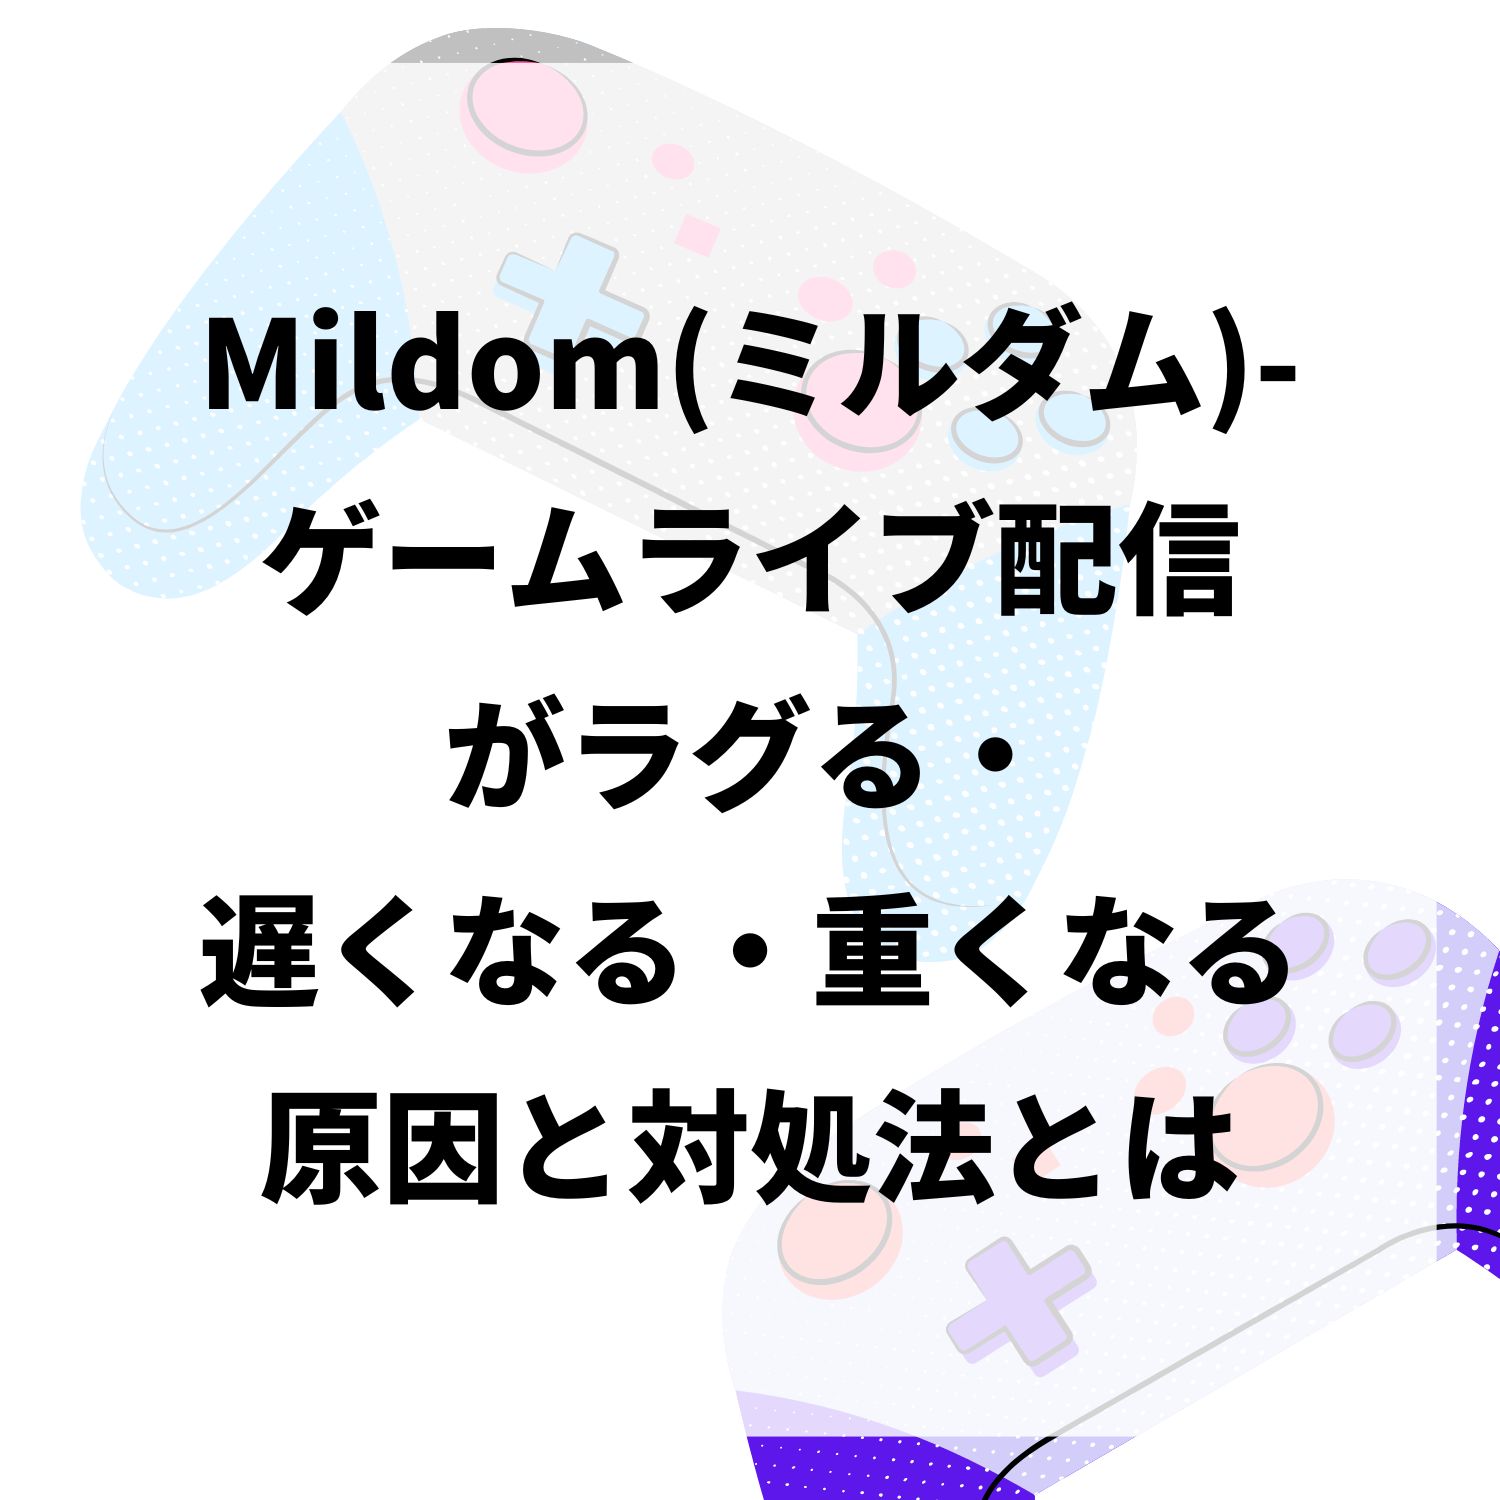 Mildom（ミルダム）−ゲームライブ配信がラグる・遅くなる・重くなる原因と対処法とは #Mildom（ミルダム）−ゲームライブ配信